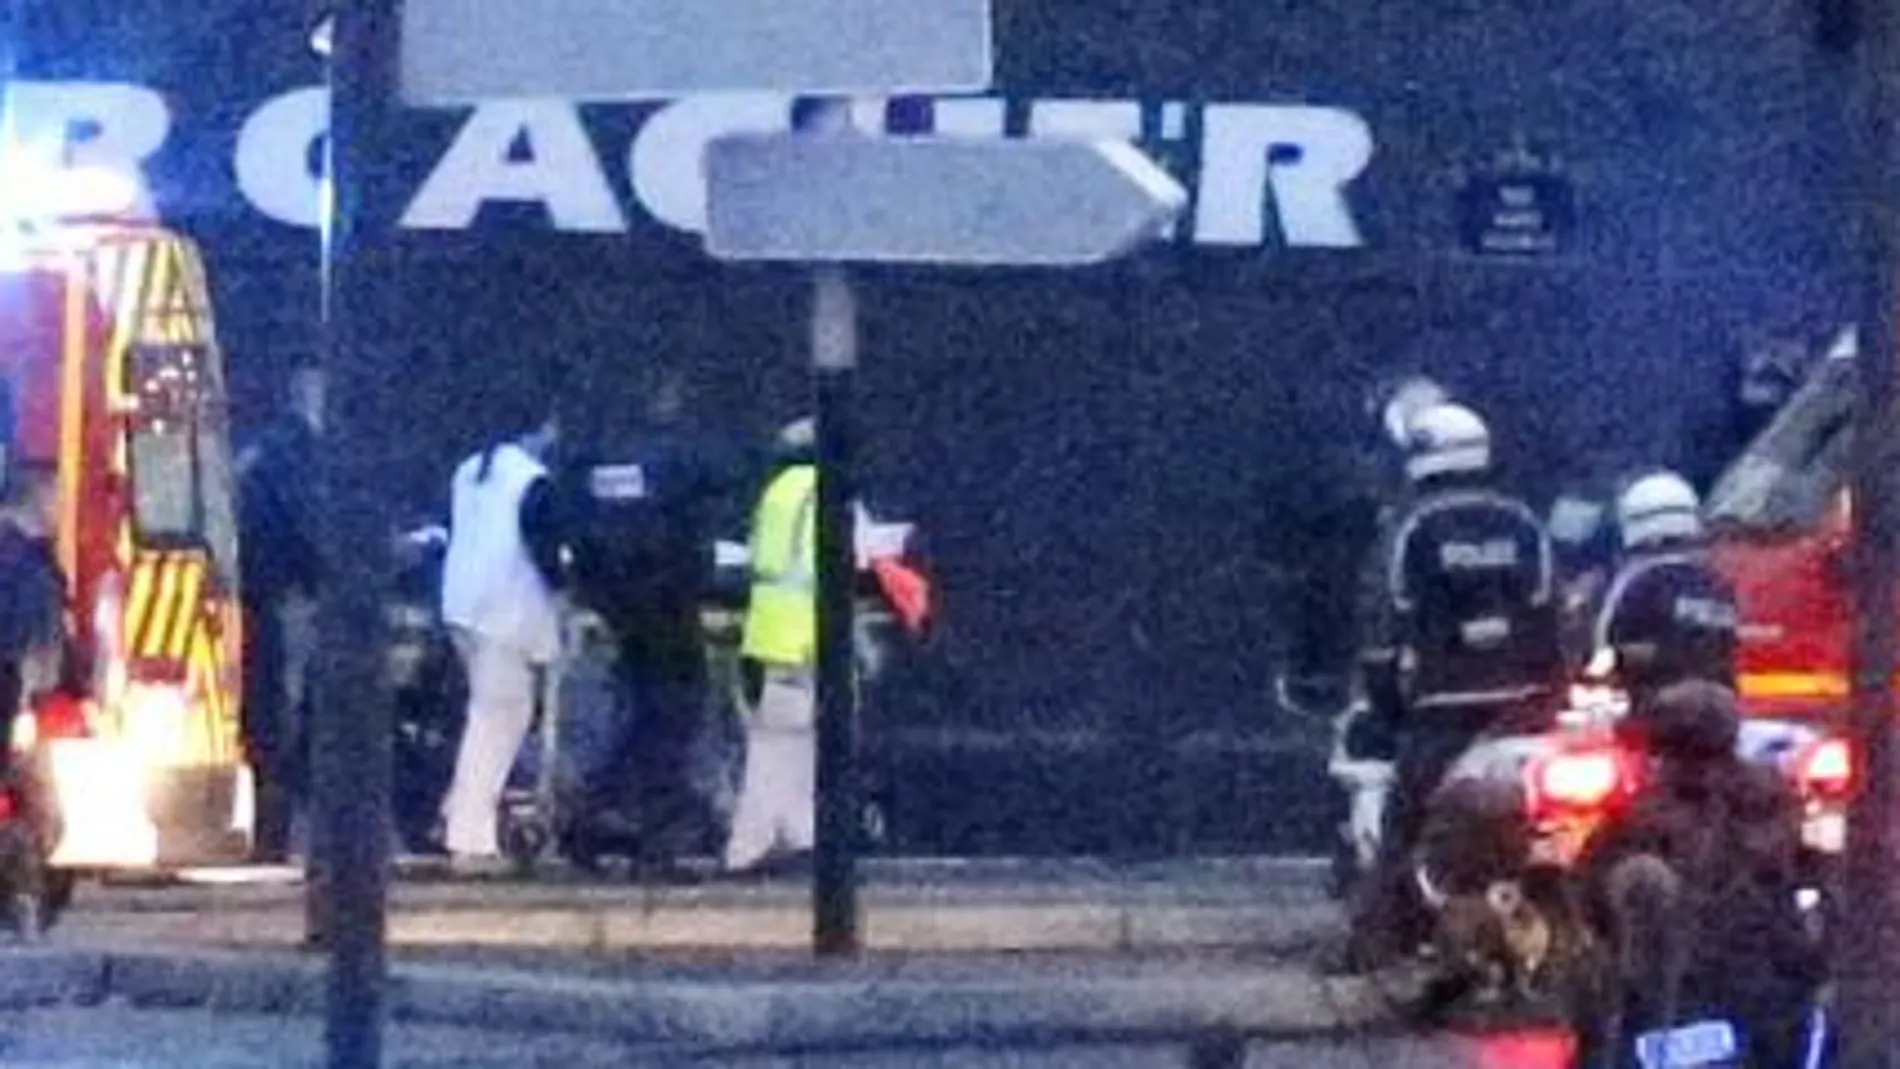 Dos asaltos simultáneos acaban con las dramáticas tomas de rehenes de París